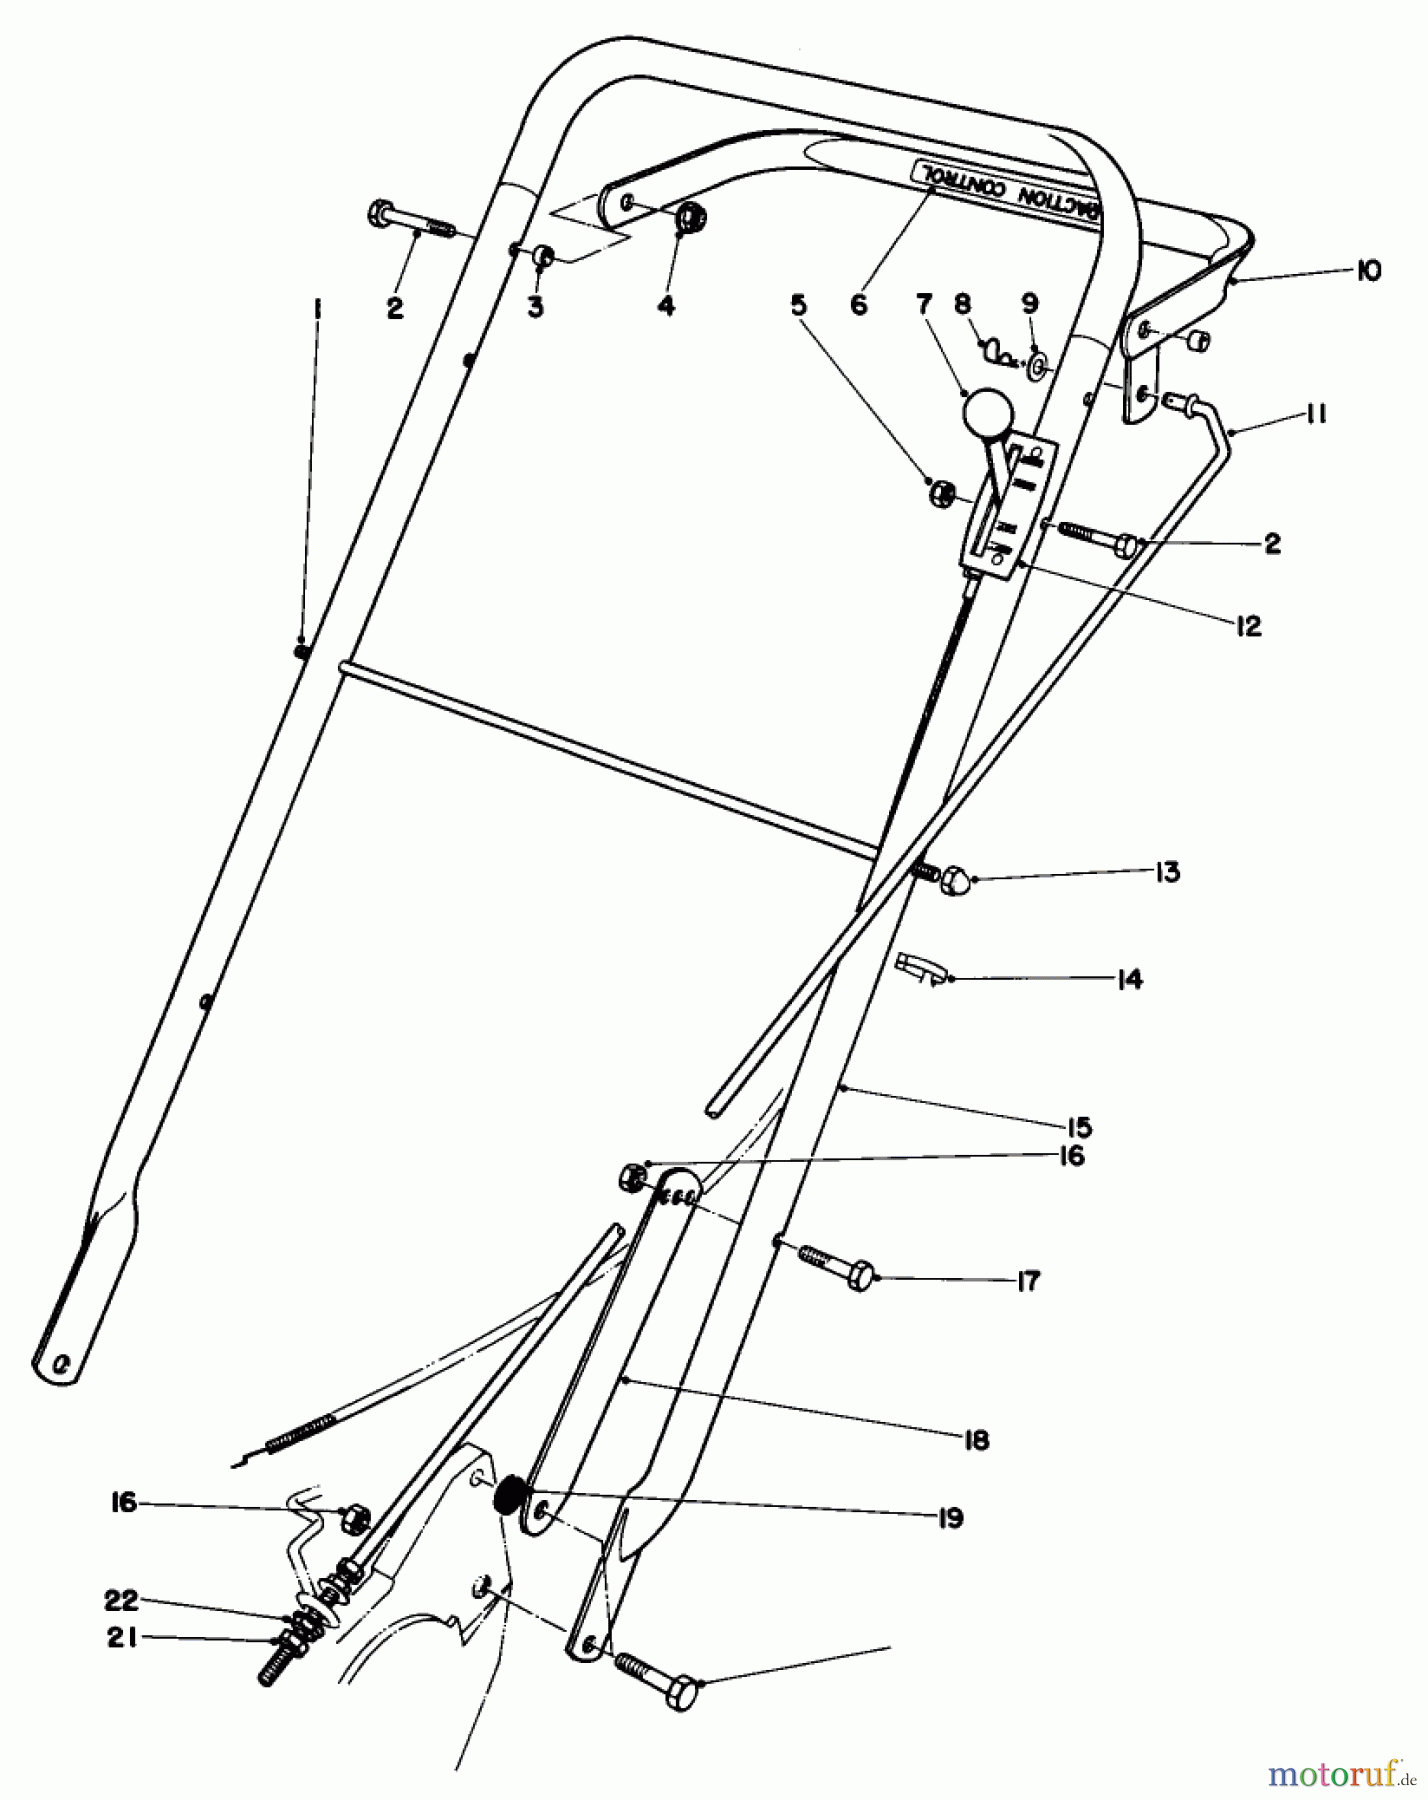  Toro Neu Mowers, Walk-Behind Seite 2 22015 - Toro Lawnmower, 1983 (3000001-3999999) HANDLE ASSEMBLY (MODEL 22020)